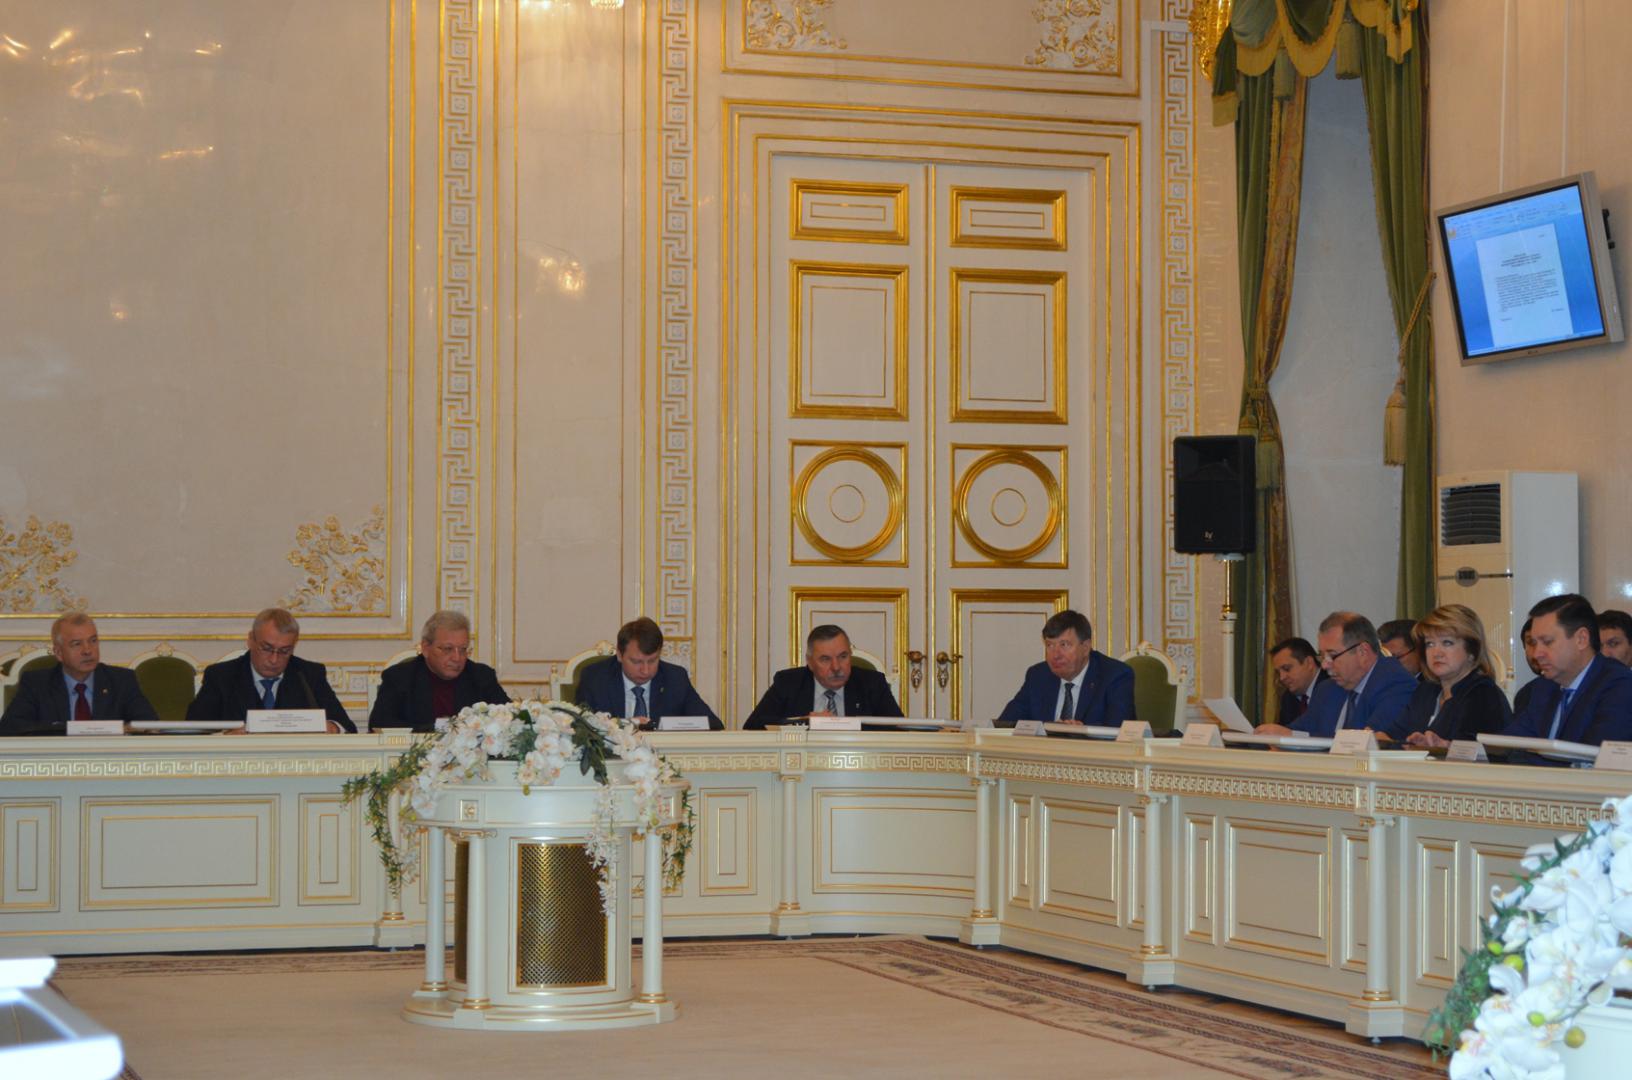 Контрольно-счетная палата подготовила заключение на проект бюджета Санкт-Петербурга на 2018 год и на плановый период